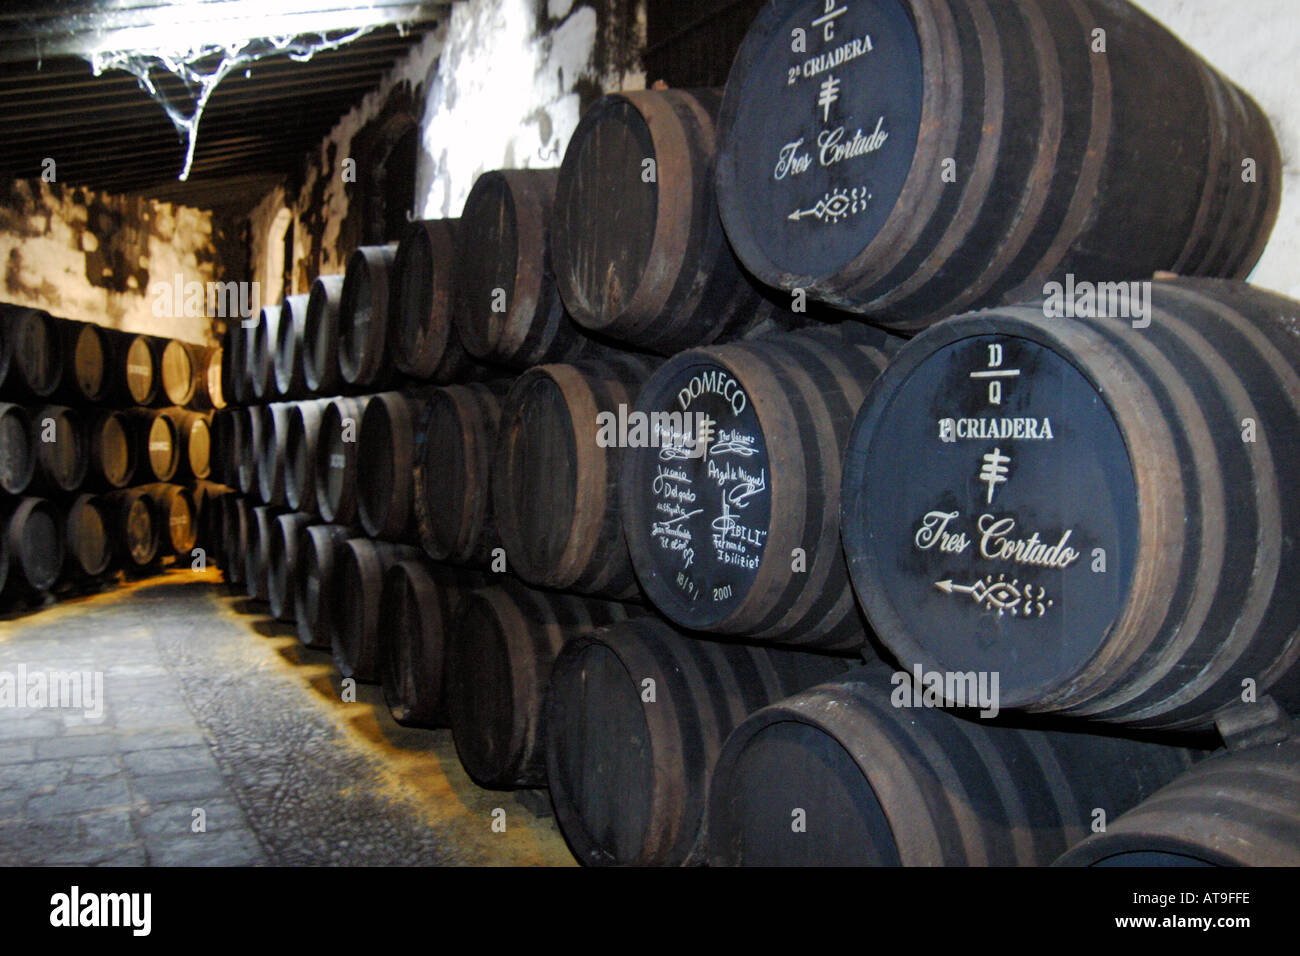 Jerez de la Frontera Jerez Destillerie Domecq barrals en bodega showroom de madera Foto de stock